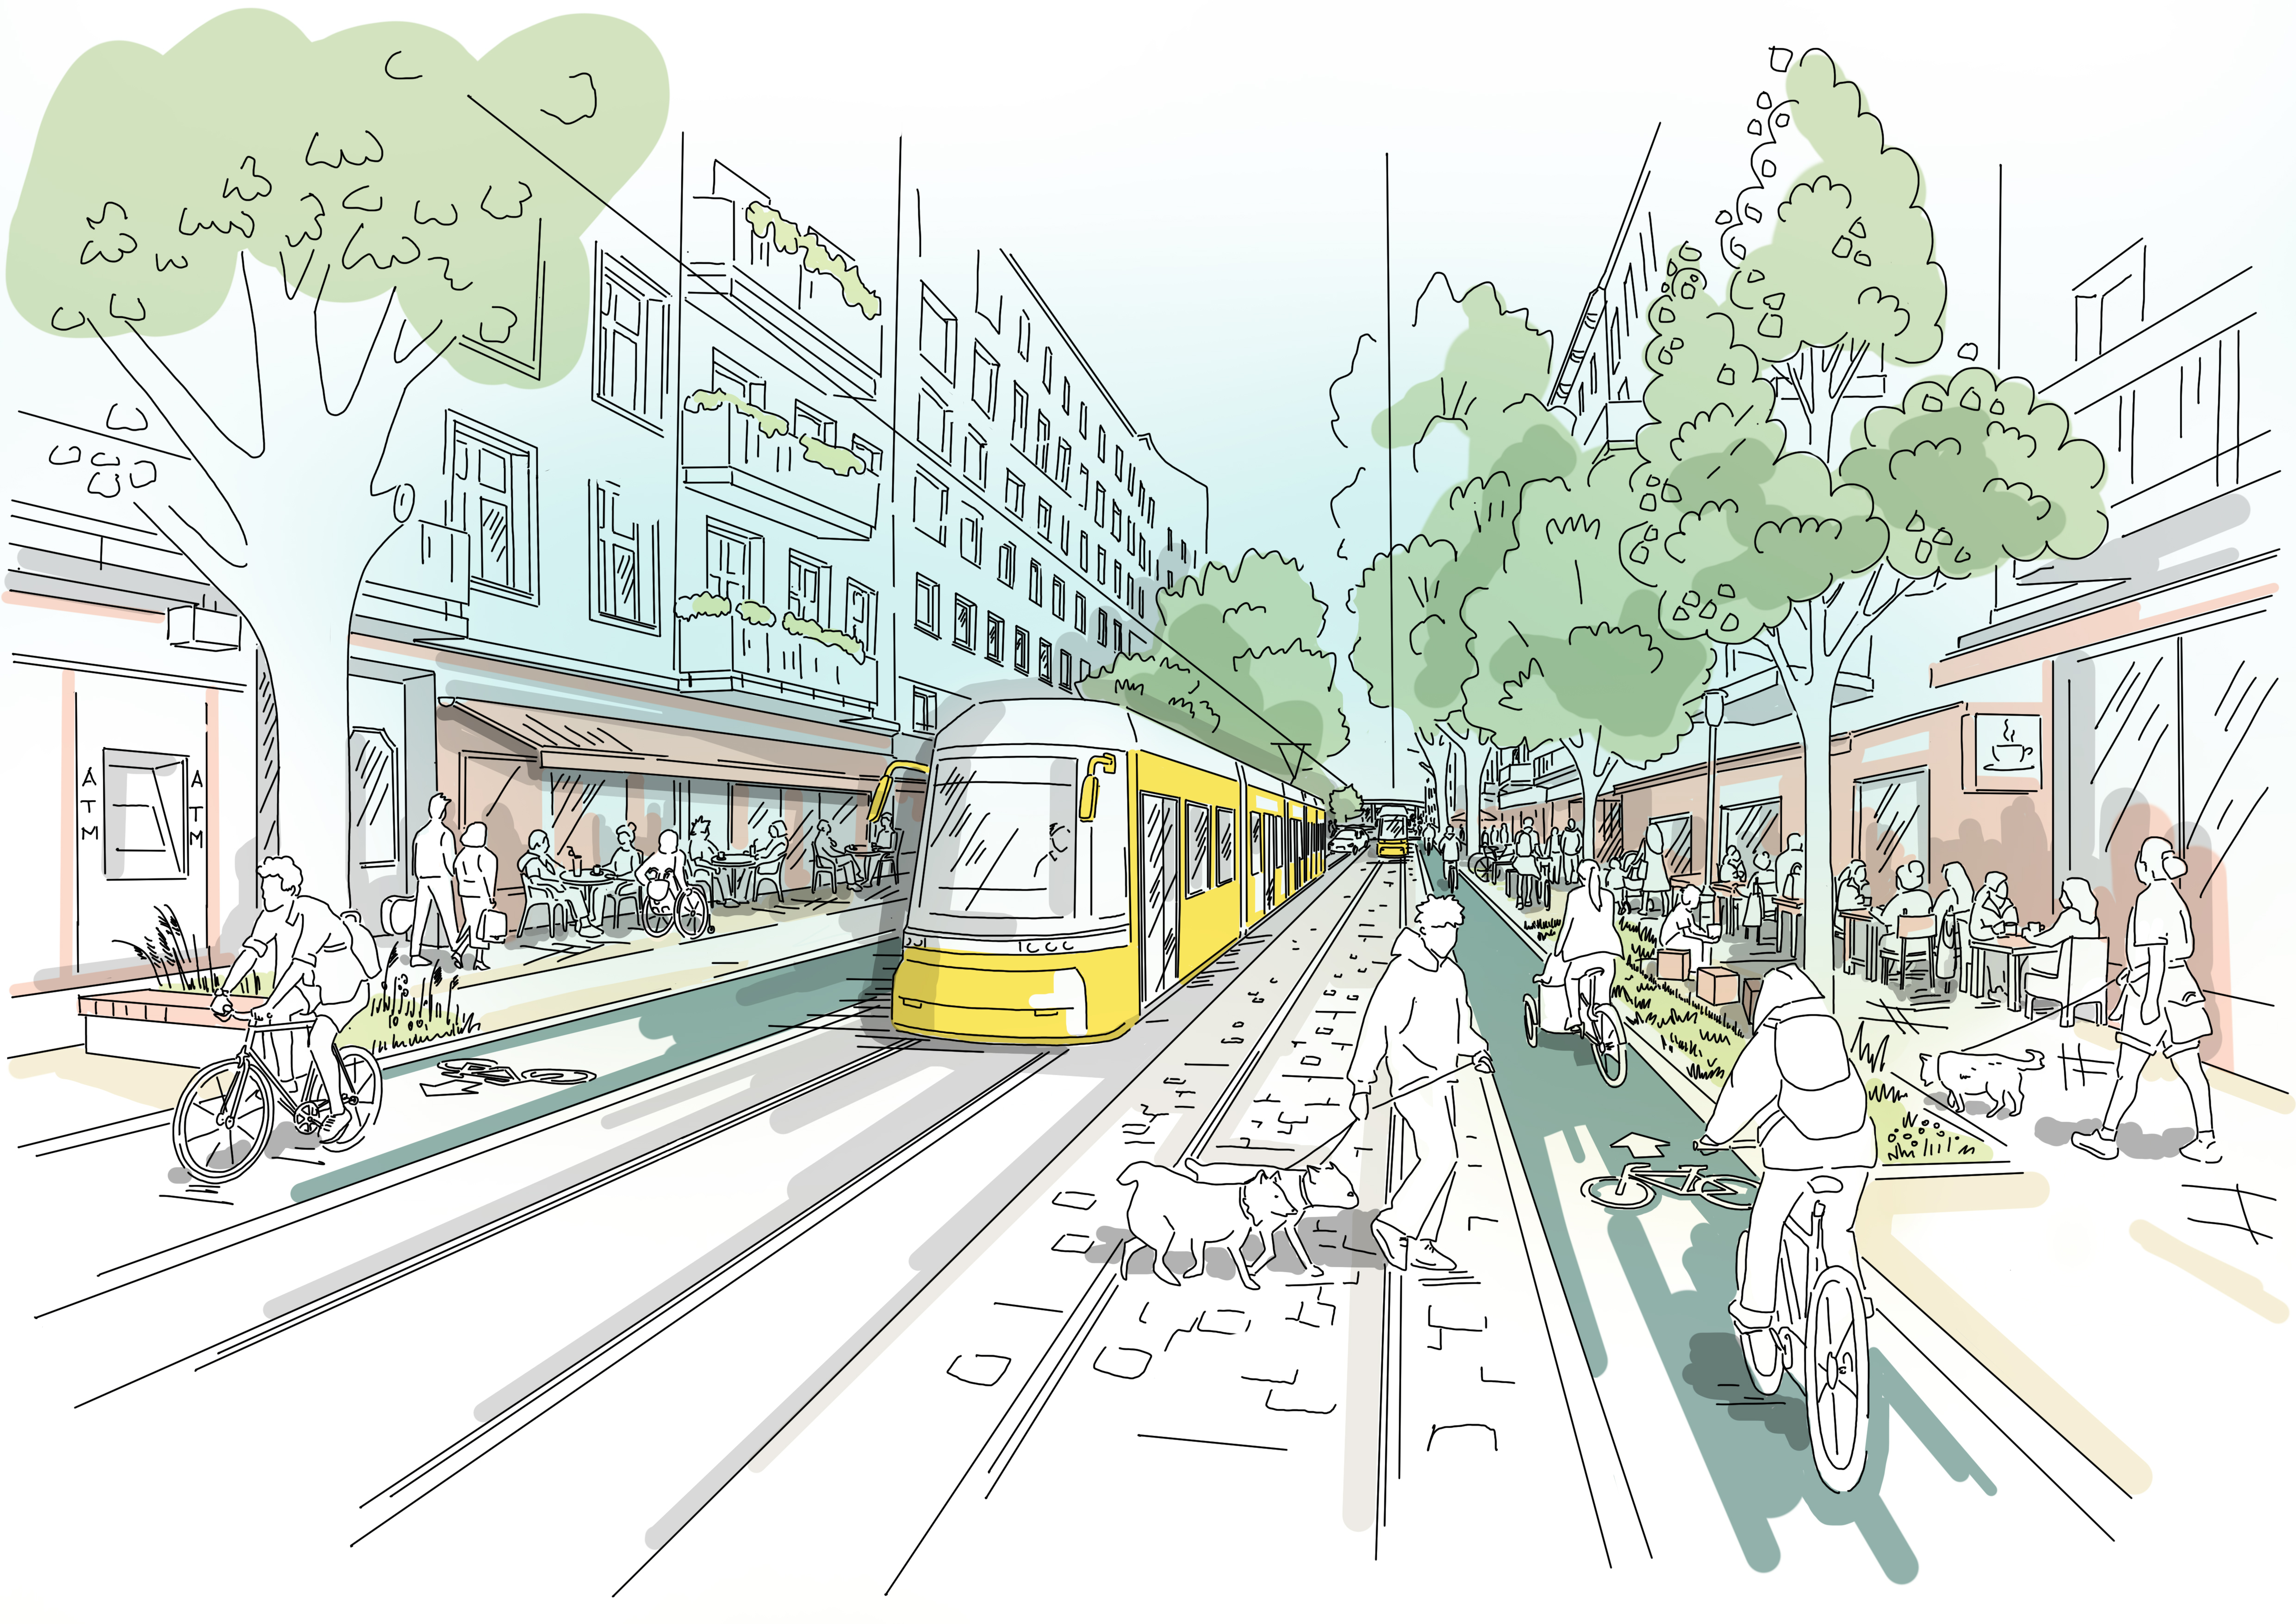 Diese Abbildung zeit eine skizzenhafte Darstellung der Straßenbahnführung in Mittellage nach der Fertigstellung des Projekts